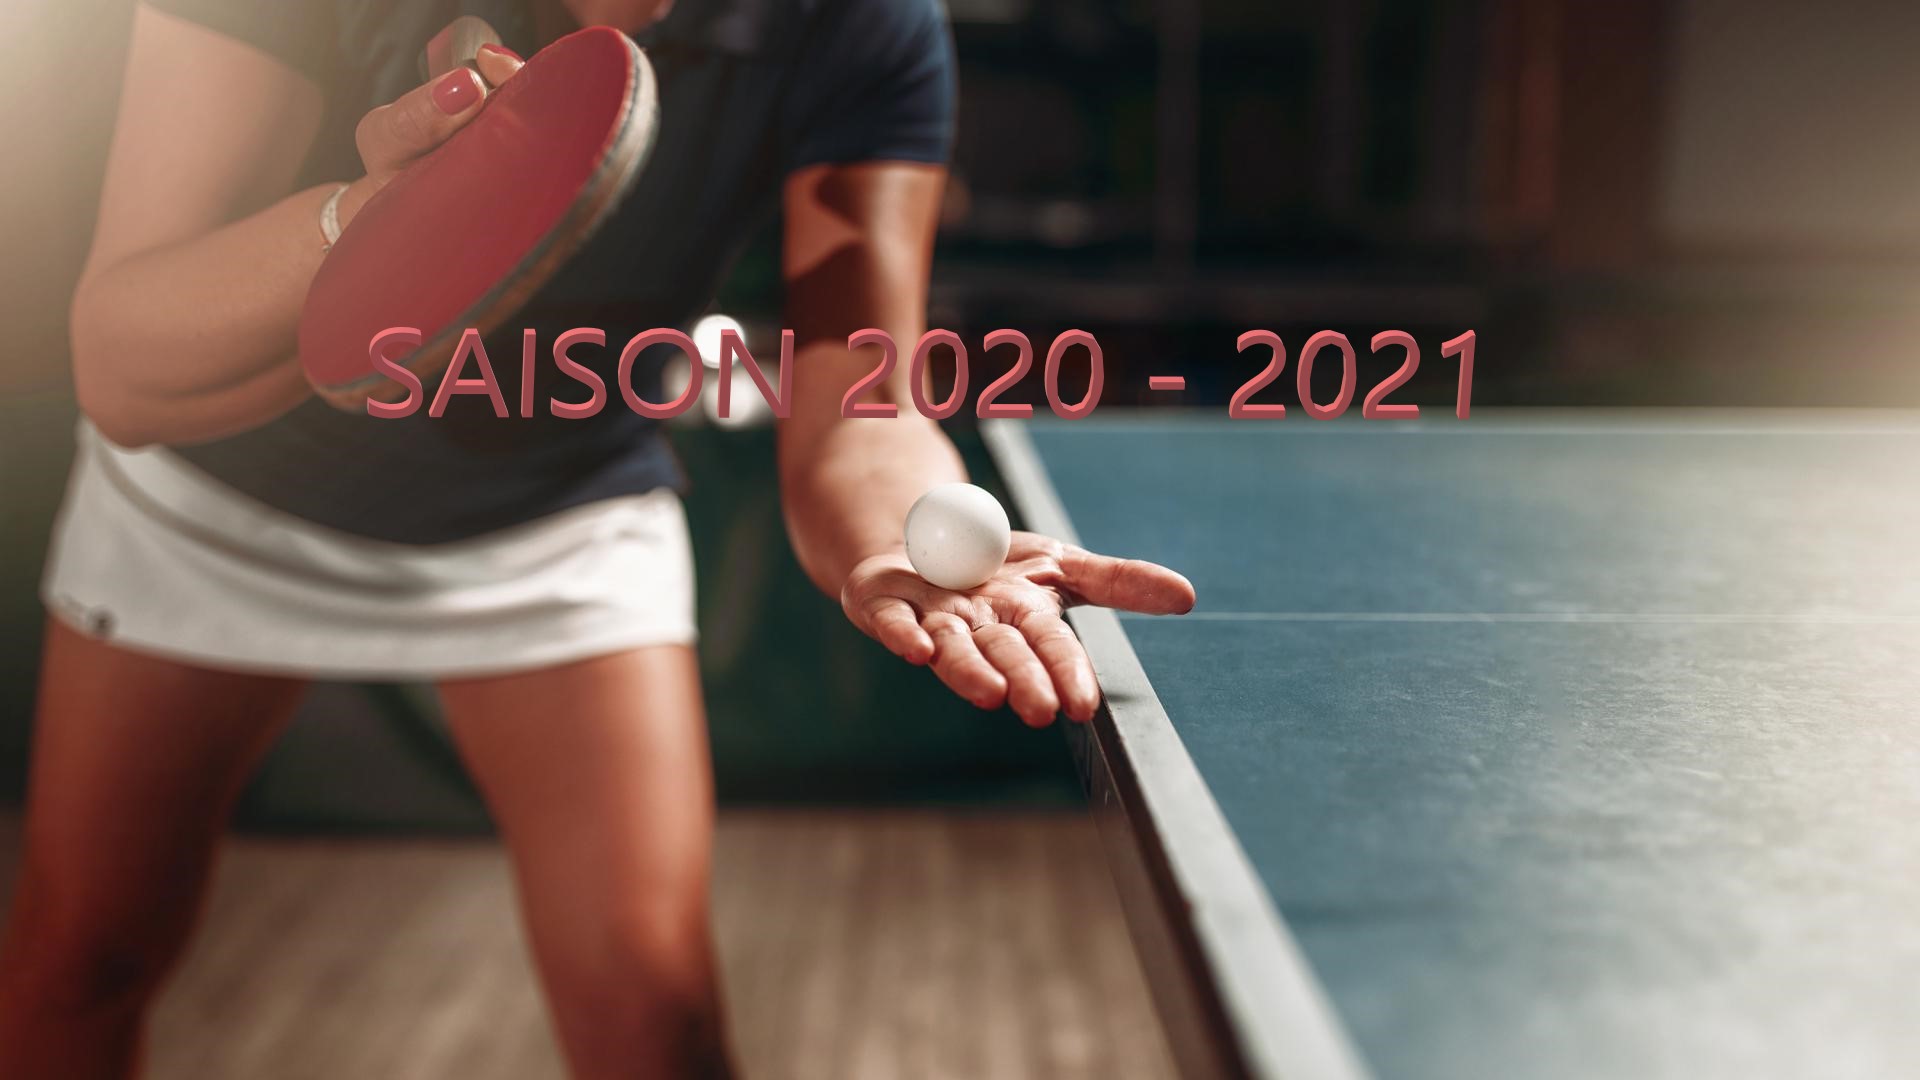 Saison 2020-2021: A vos raquettes! (Inscriptions ouvertes)